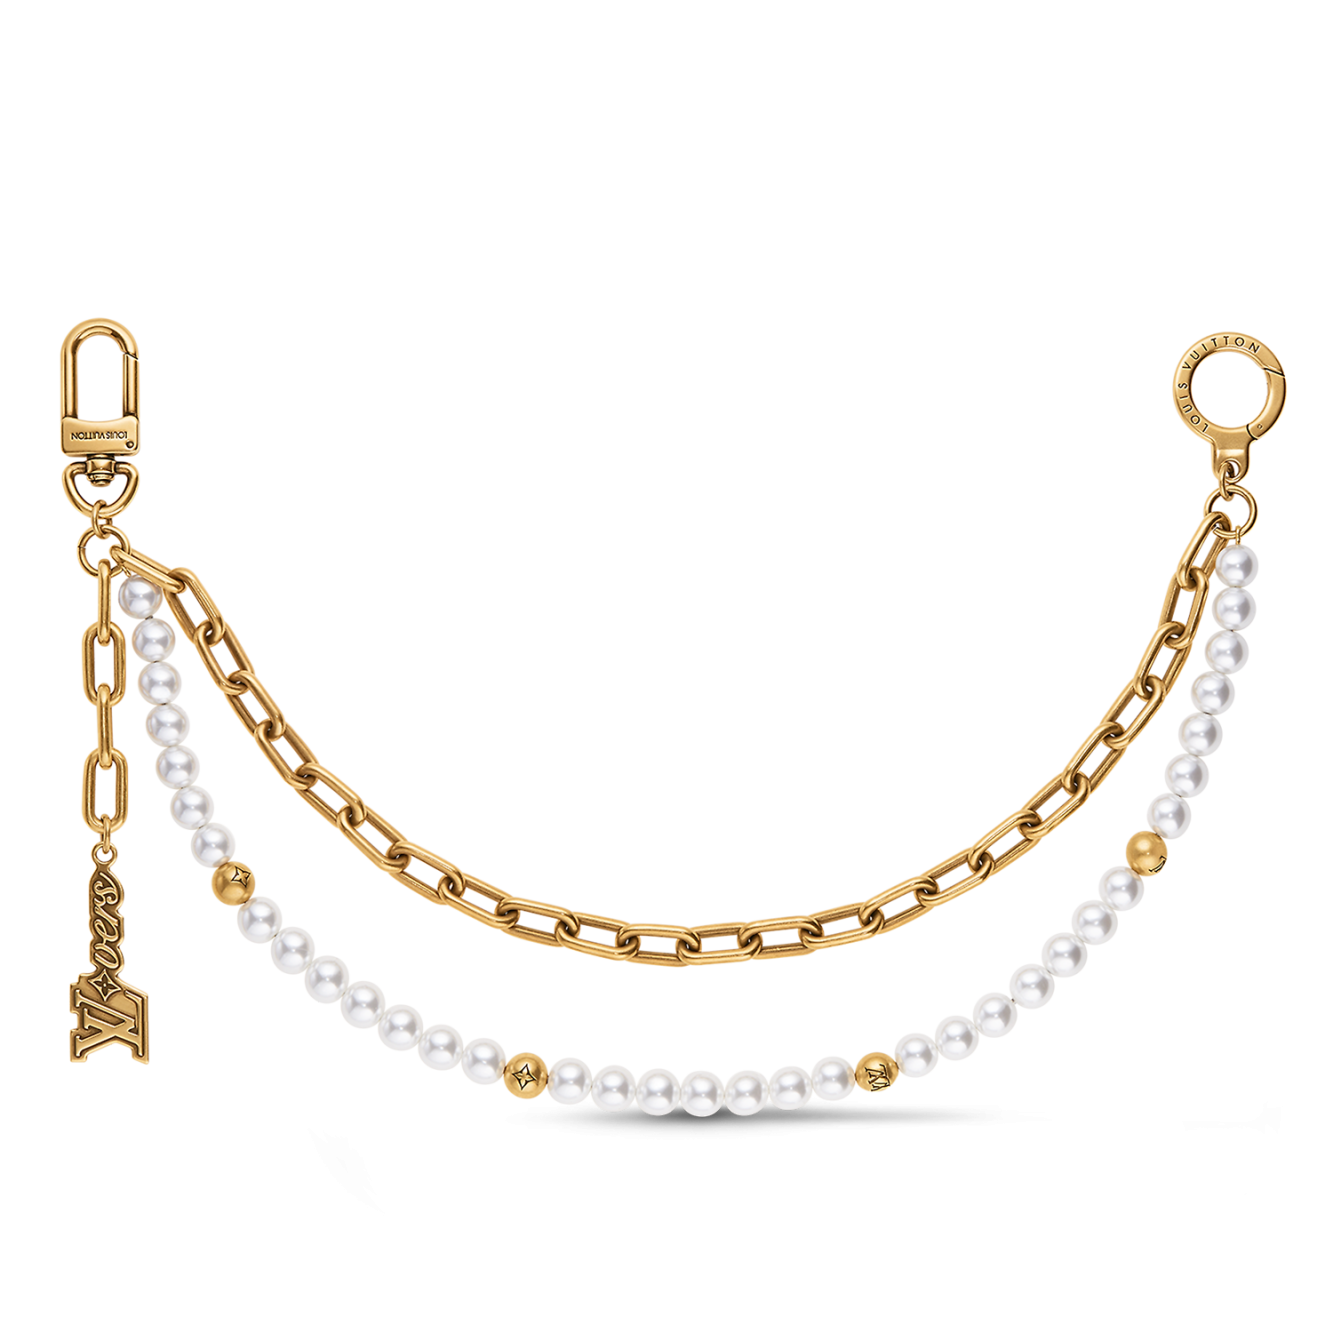 Louis Vuitton Chain Belt Pearls Bag Charm